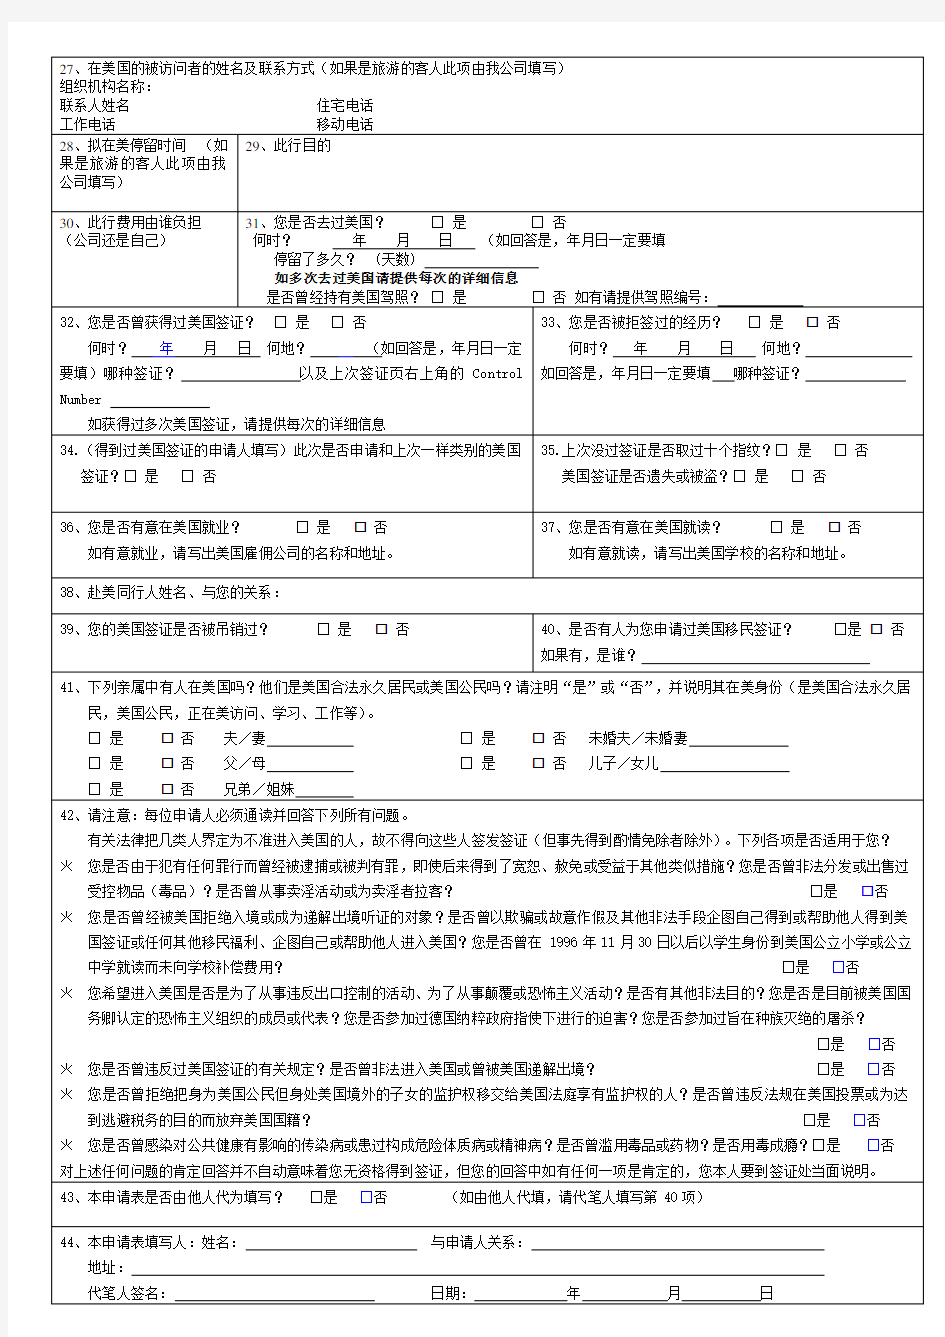 美国最新签证申请表DS-160(中文版)